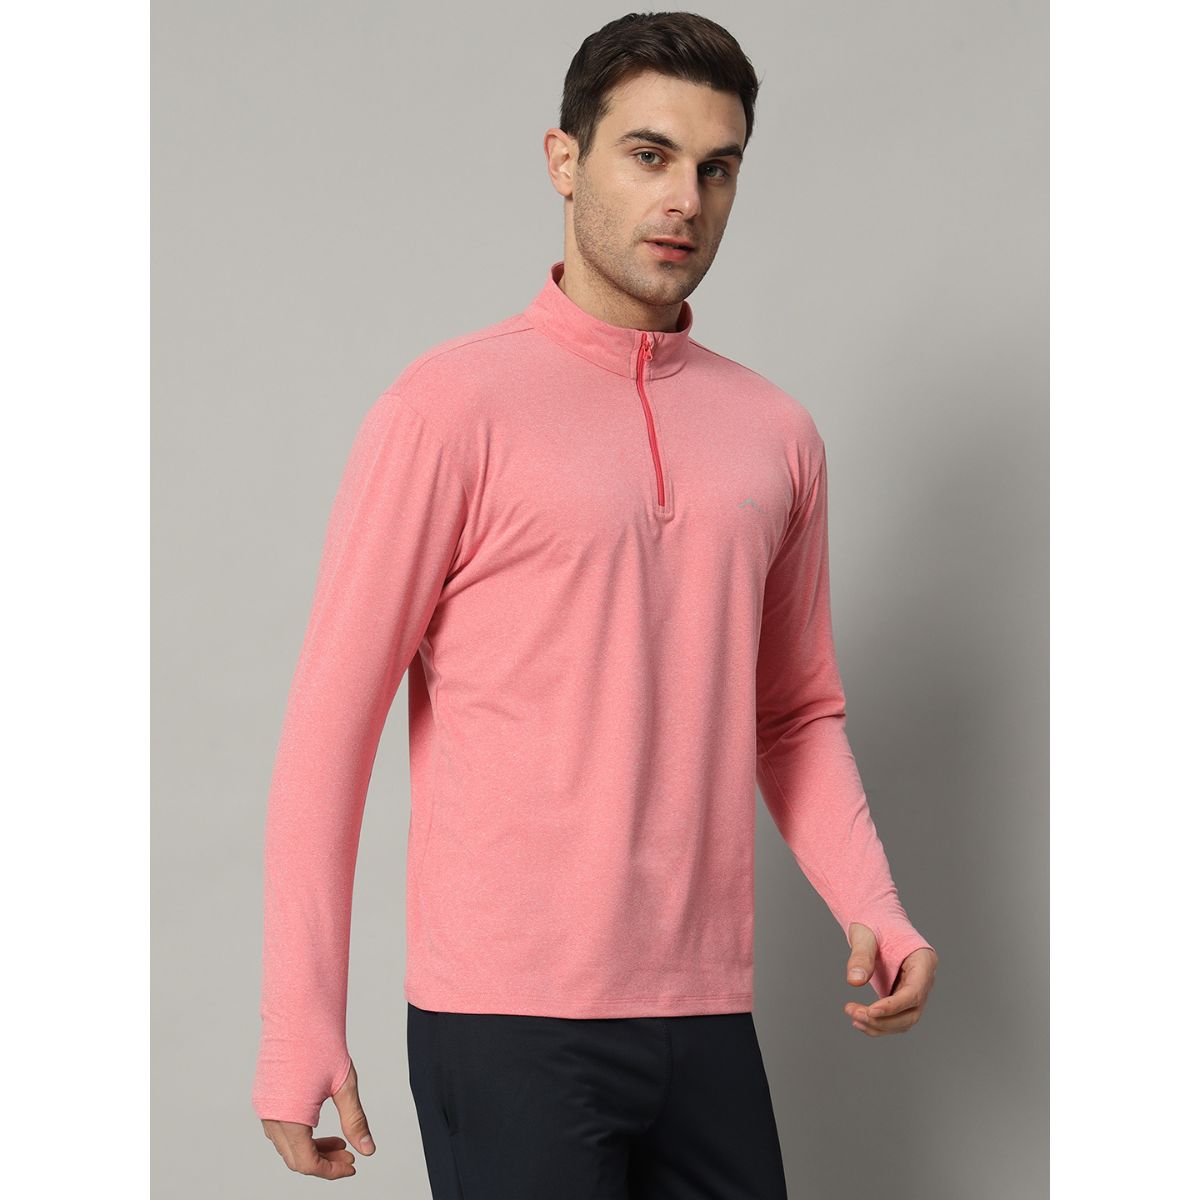 Men's Nomadic Full Sleeves T-Shirt / Baselayer - Bubblegum 1